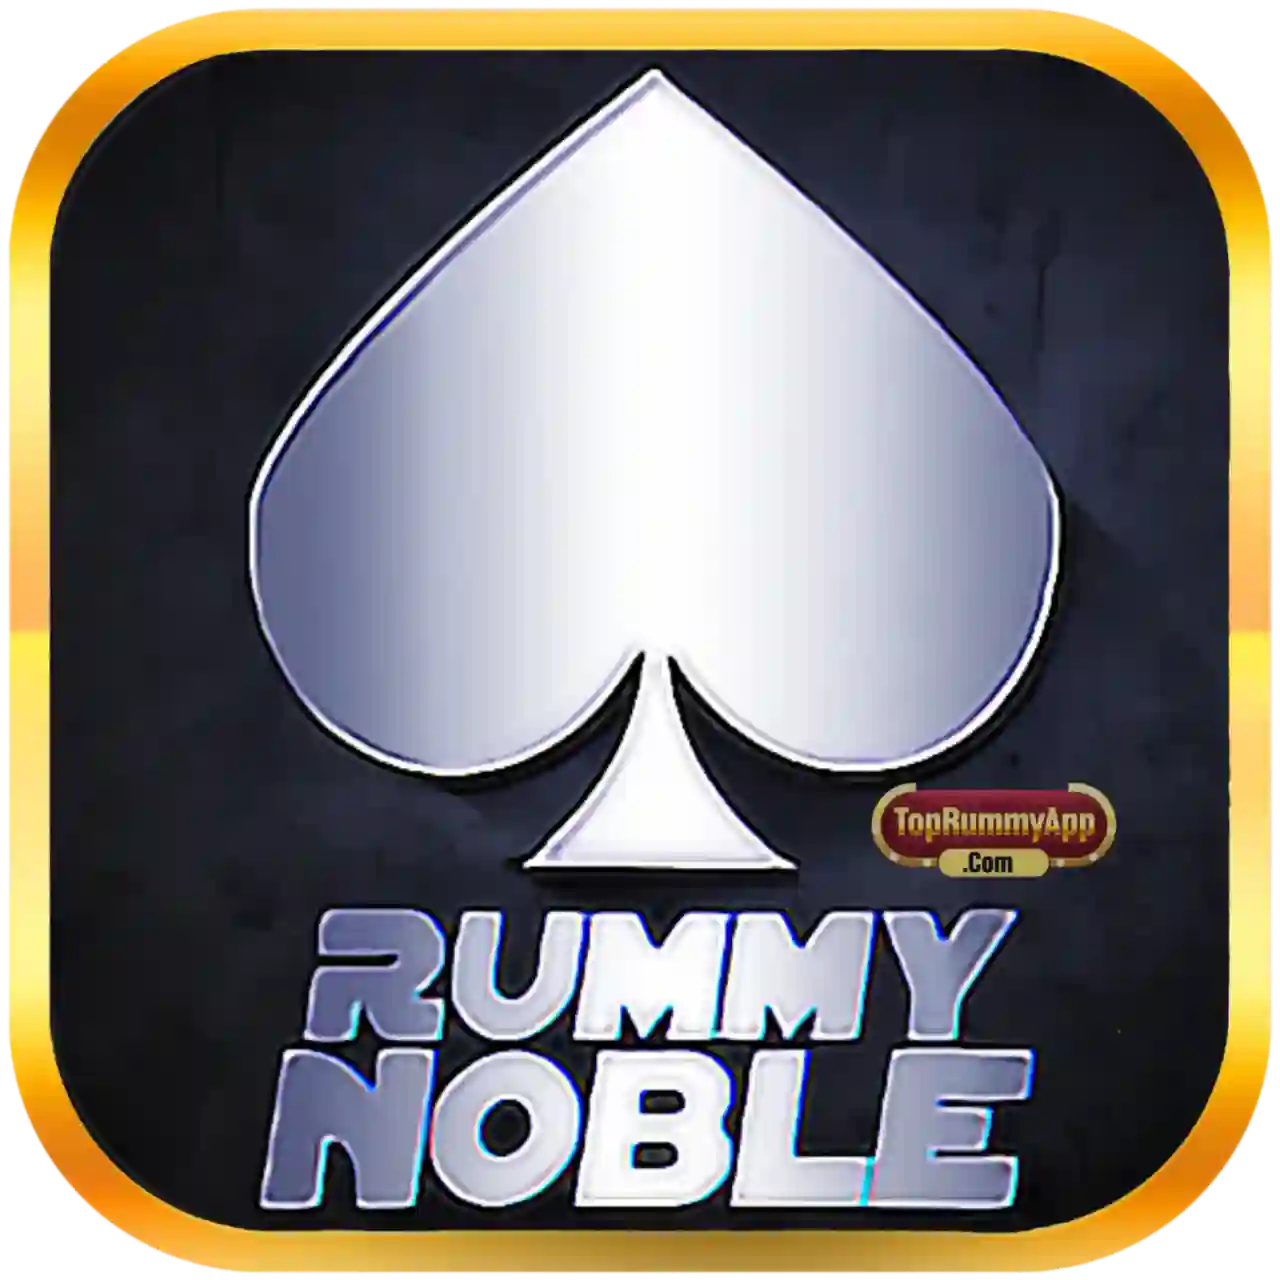 New Rummy Noble Apk Download - All Car Roulette App List 41 Bonus